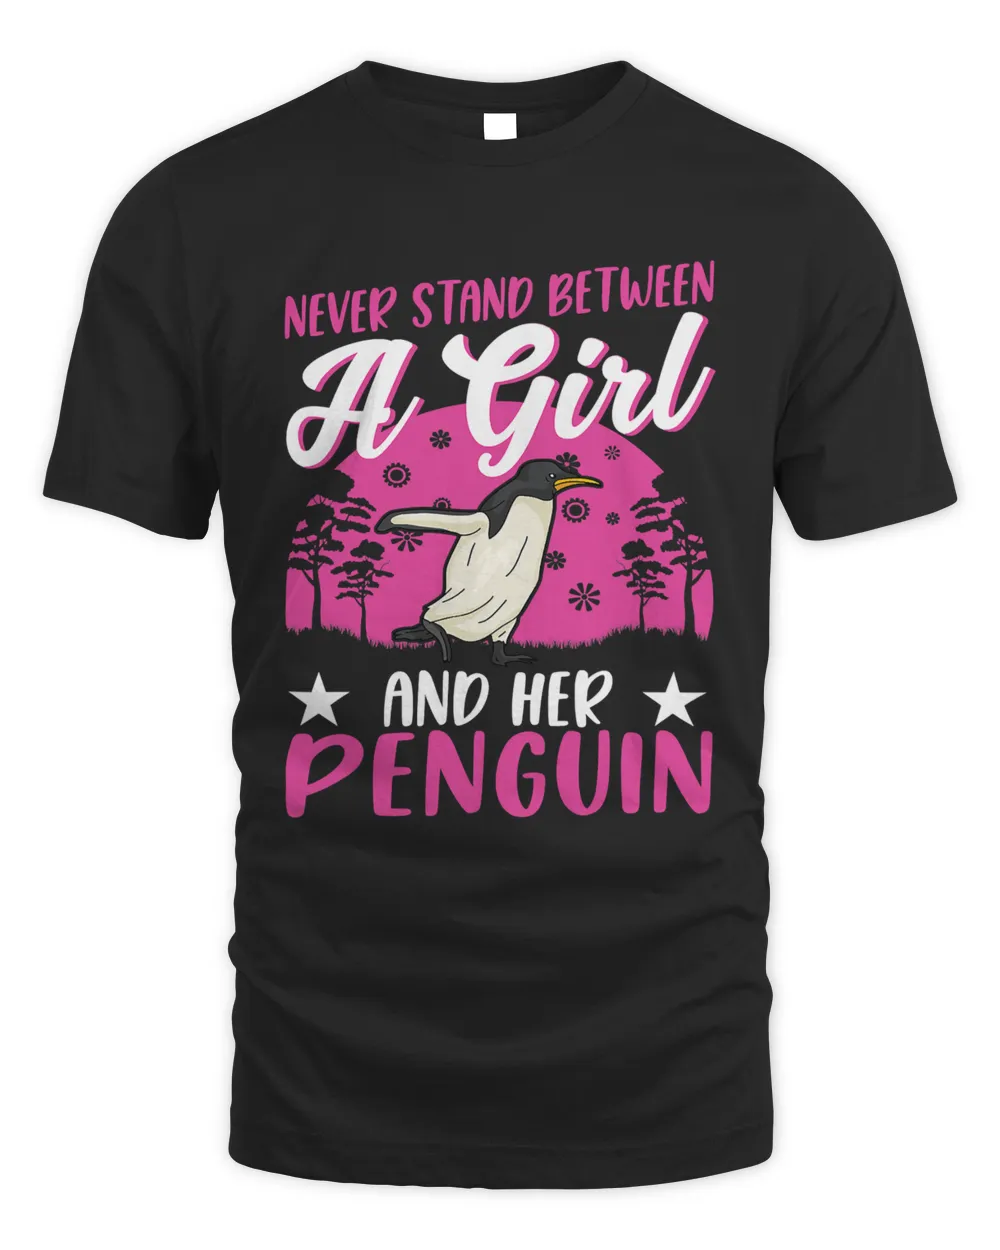 Penguin Girl Emperor Penguin 132